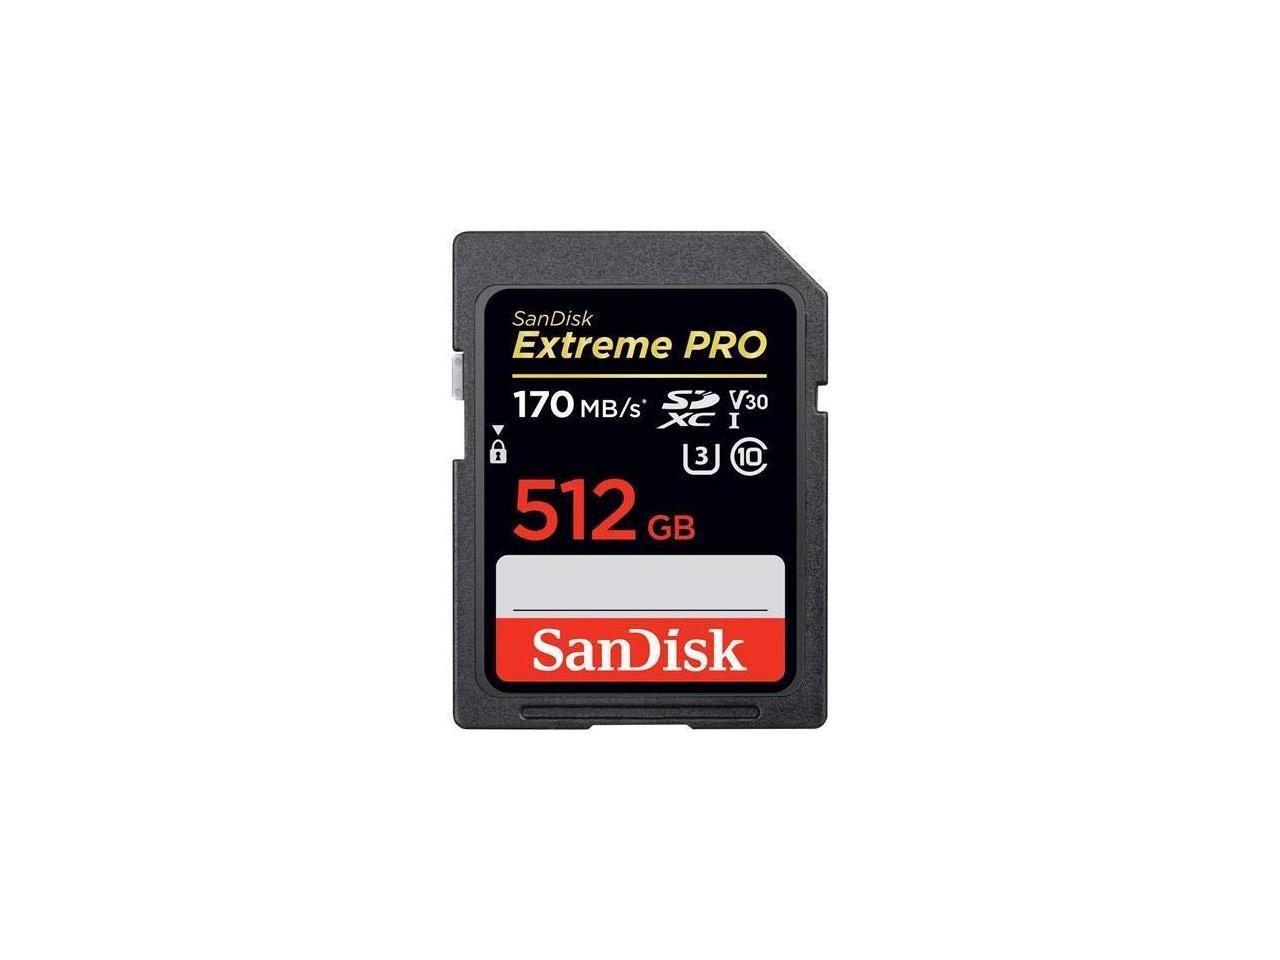 SanDisk 512GB Extreme PRO UHS-I SDXC Memory Card 729896172942 | eBay